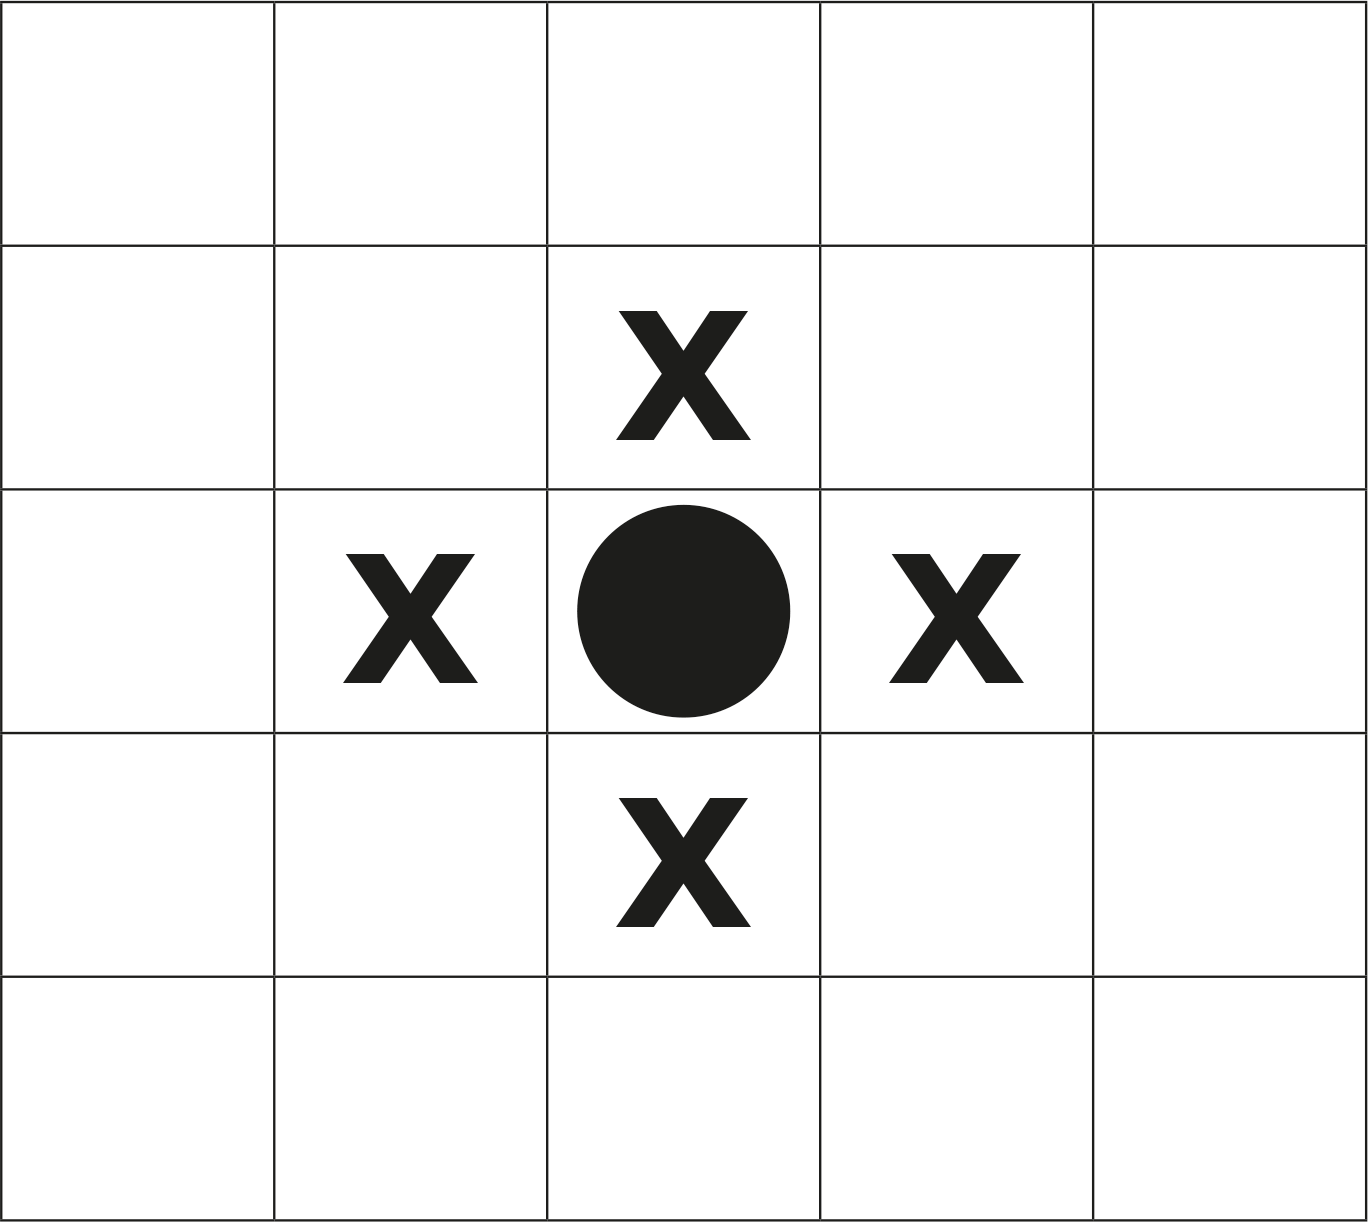 Przykład ułożenia pionka na planszy i miejsc (X), na których przeciwnik nie może postawić pionka